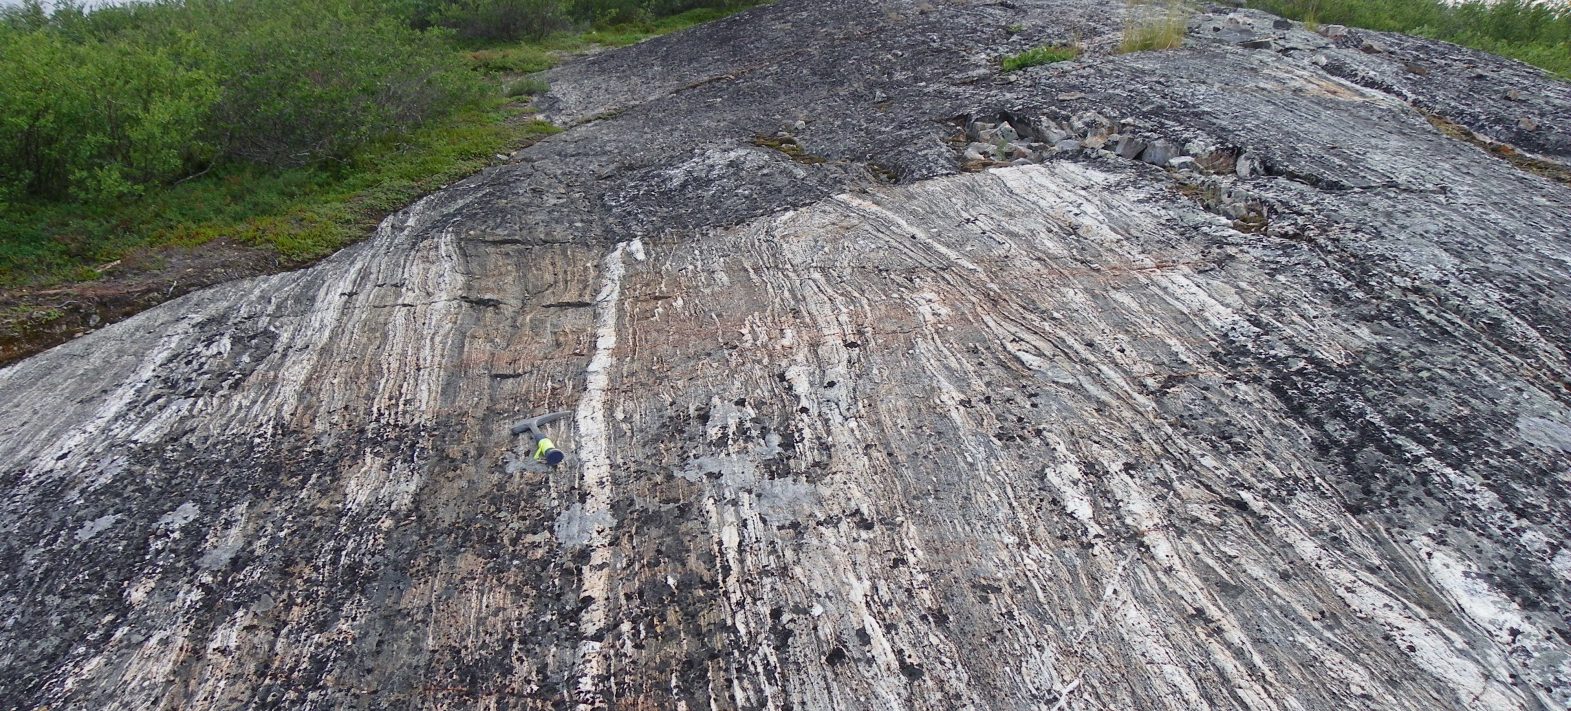 La tectonique des plaques, une histoire très ancienne